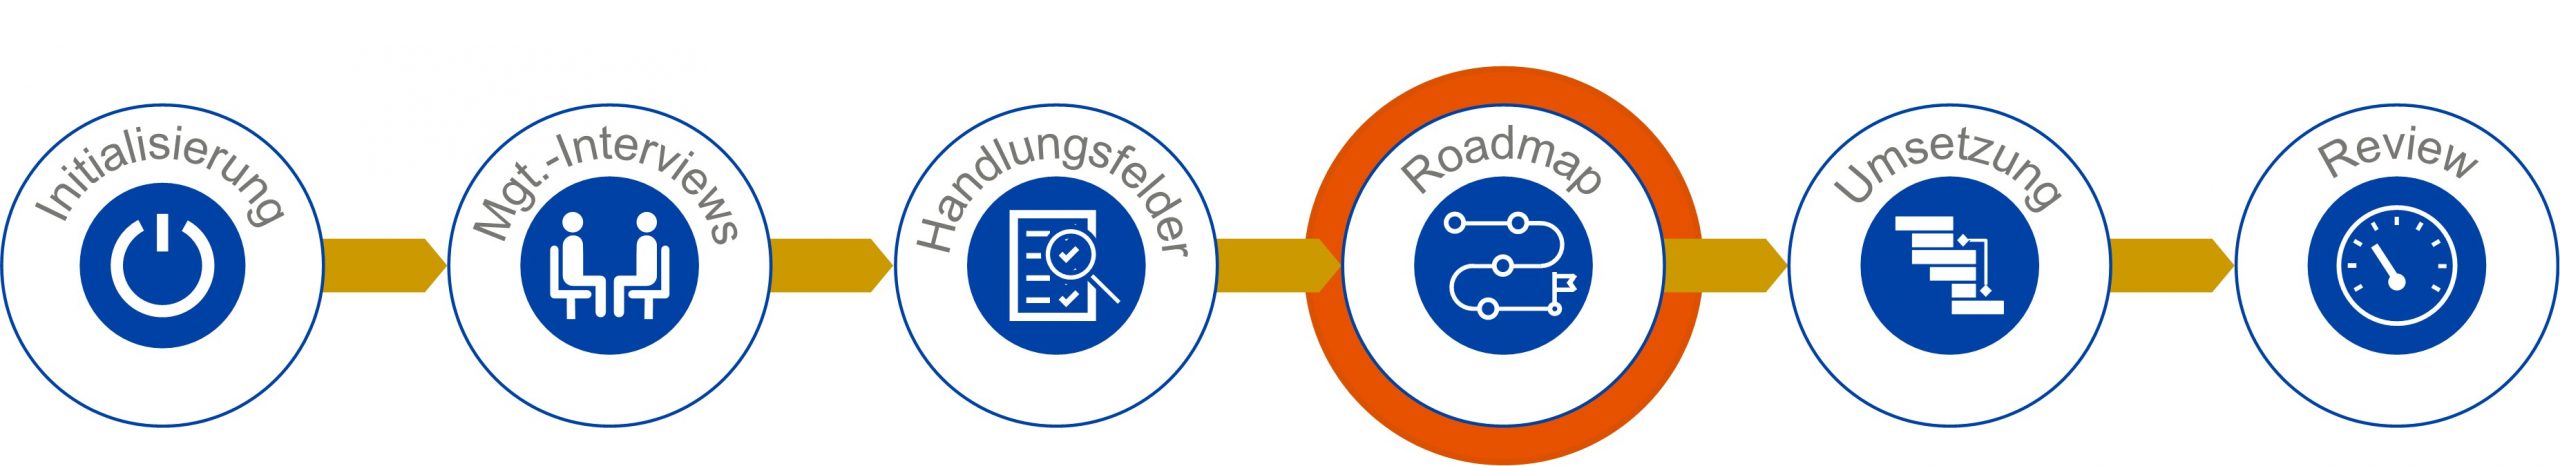 IT-Roadmap - Projektschritte